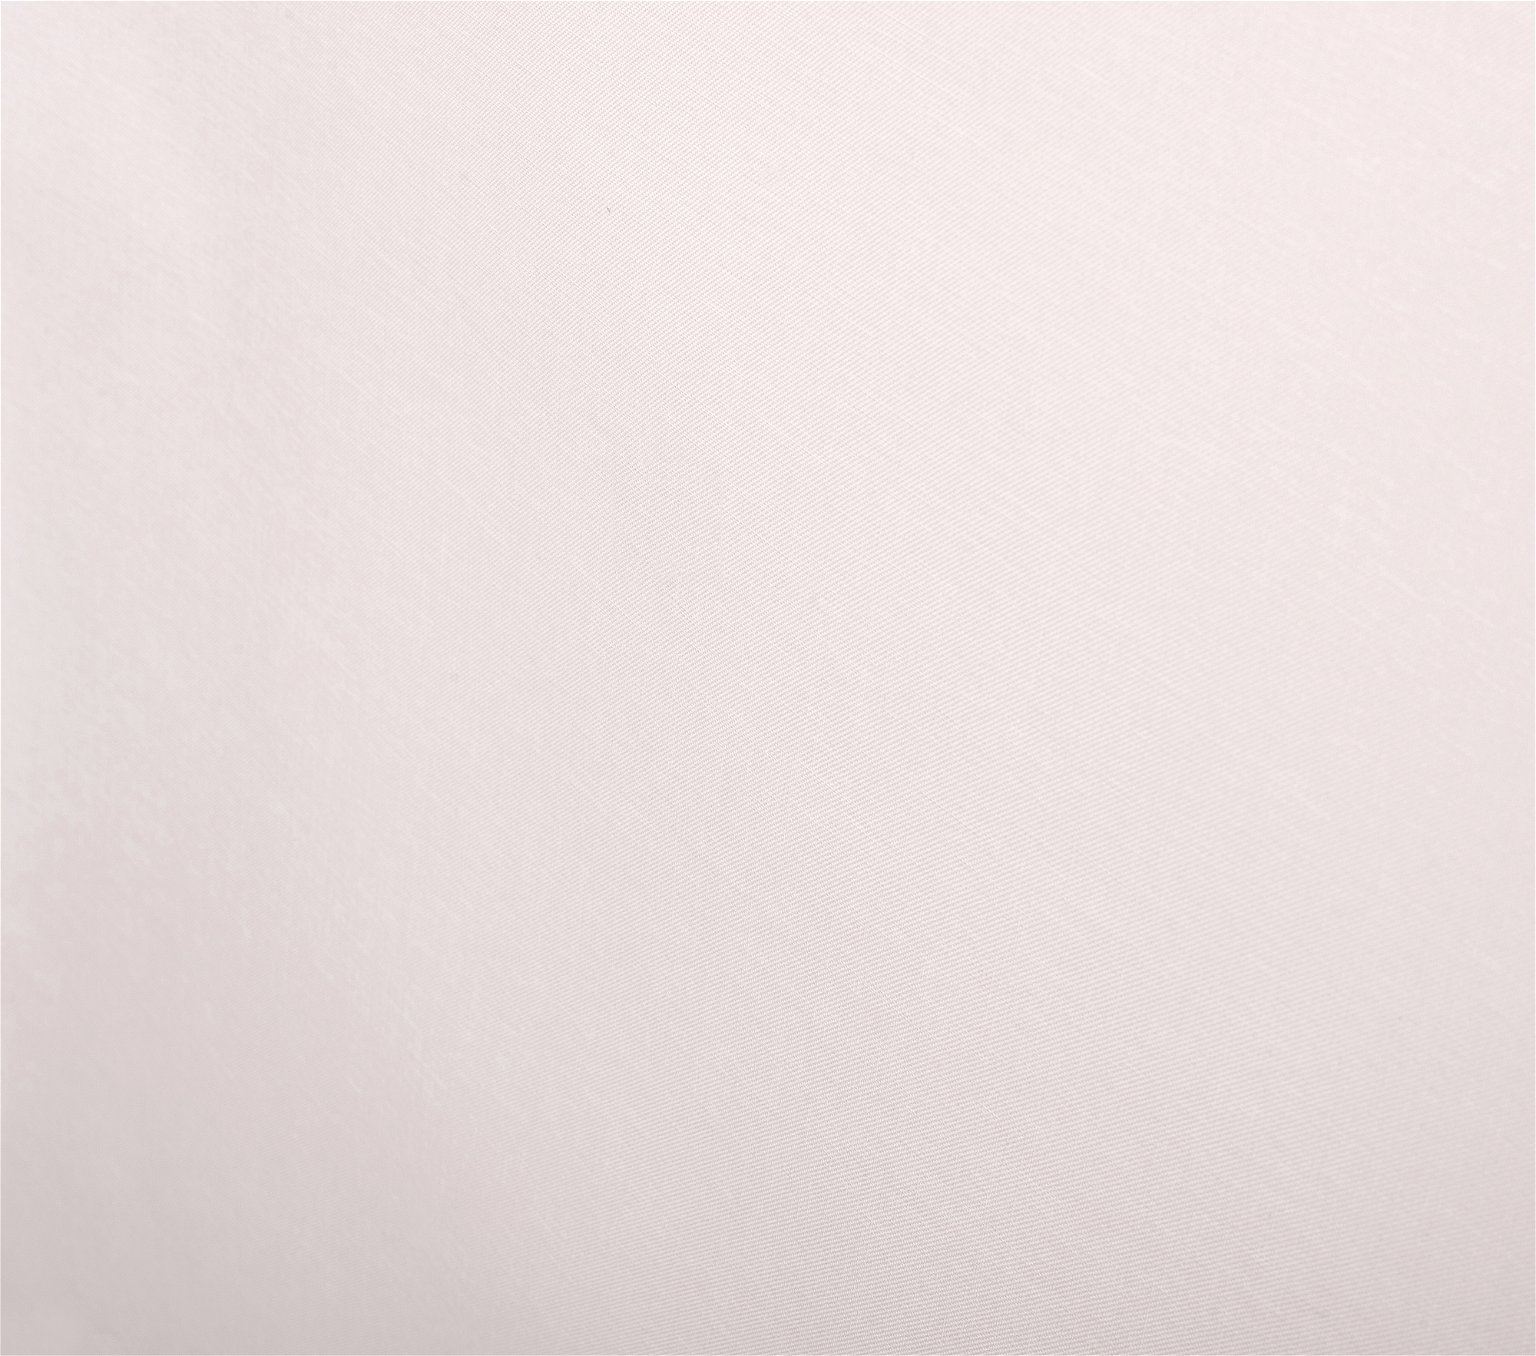 Klasikinė ritininė užuolaida MILAN, kreminės sp., 90 x 230 cm, 100 % poliesteris - 4